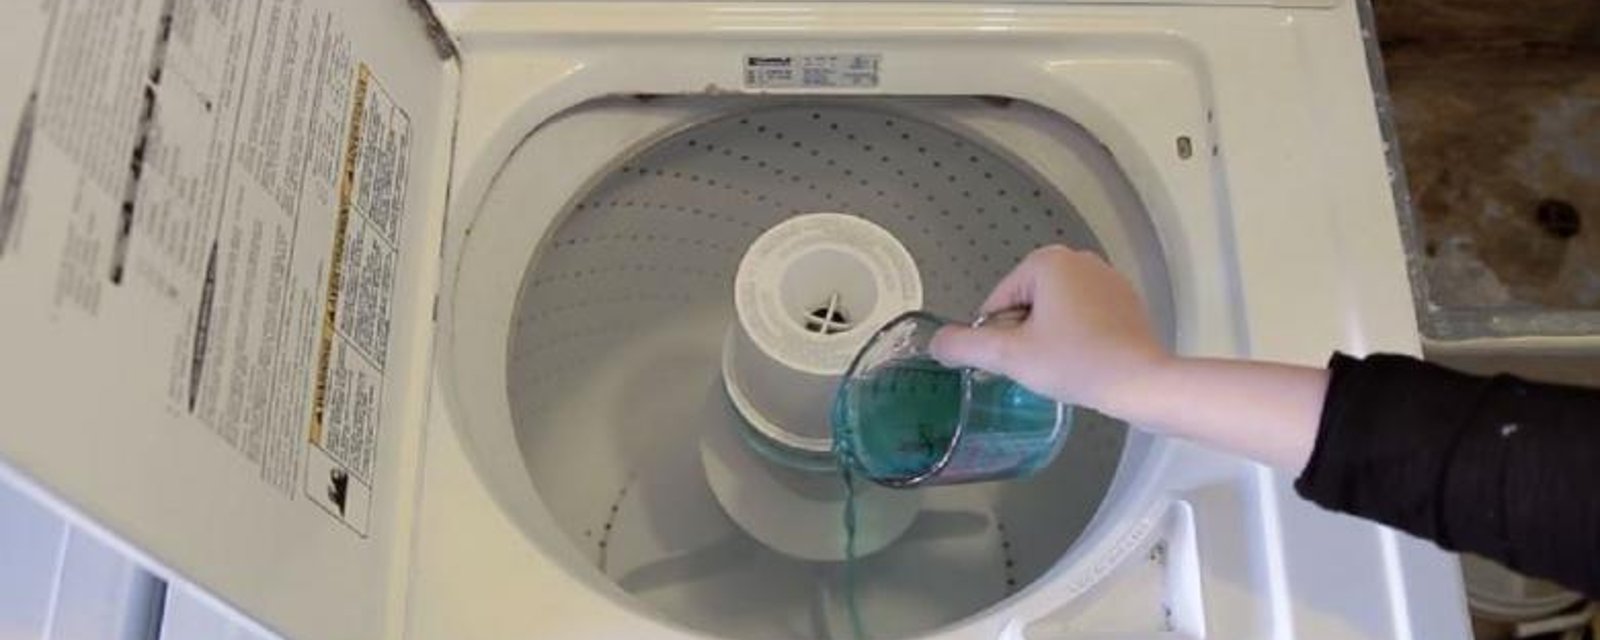 Elle verse du rince-bouche dans sa machine à laver... BRILLANT!!!